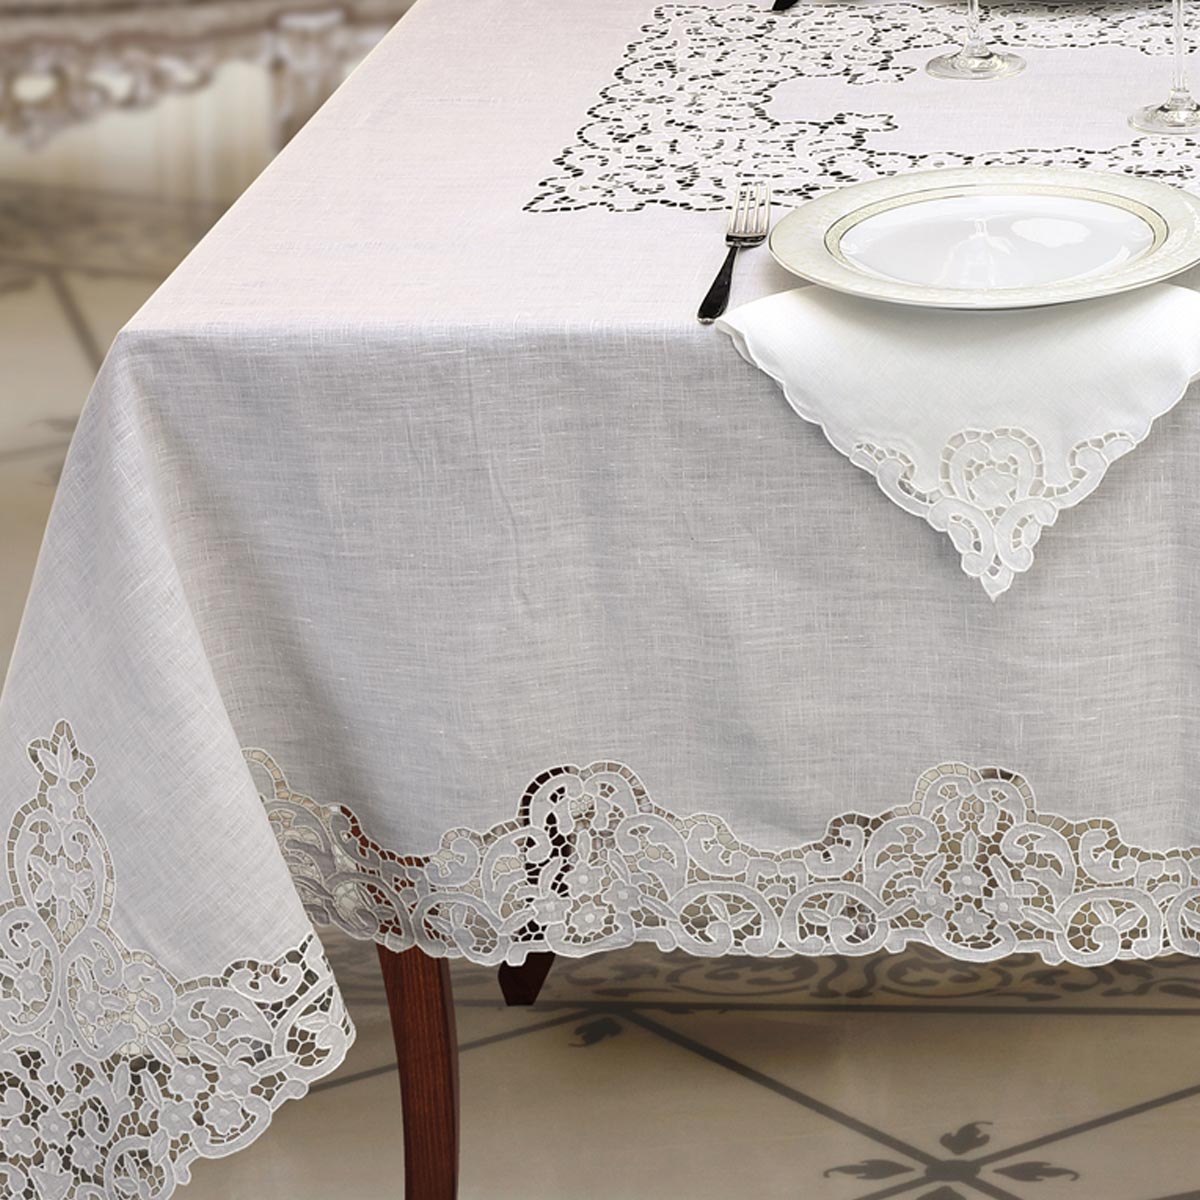 Servizio tavola ad intaglio in puro lino bianco - Prestige